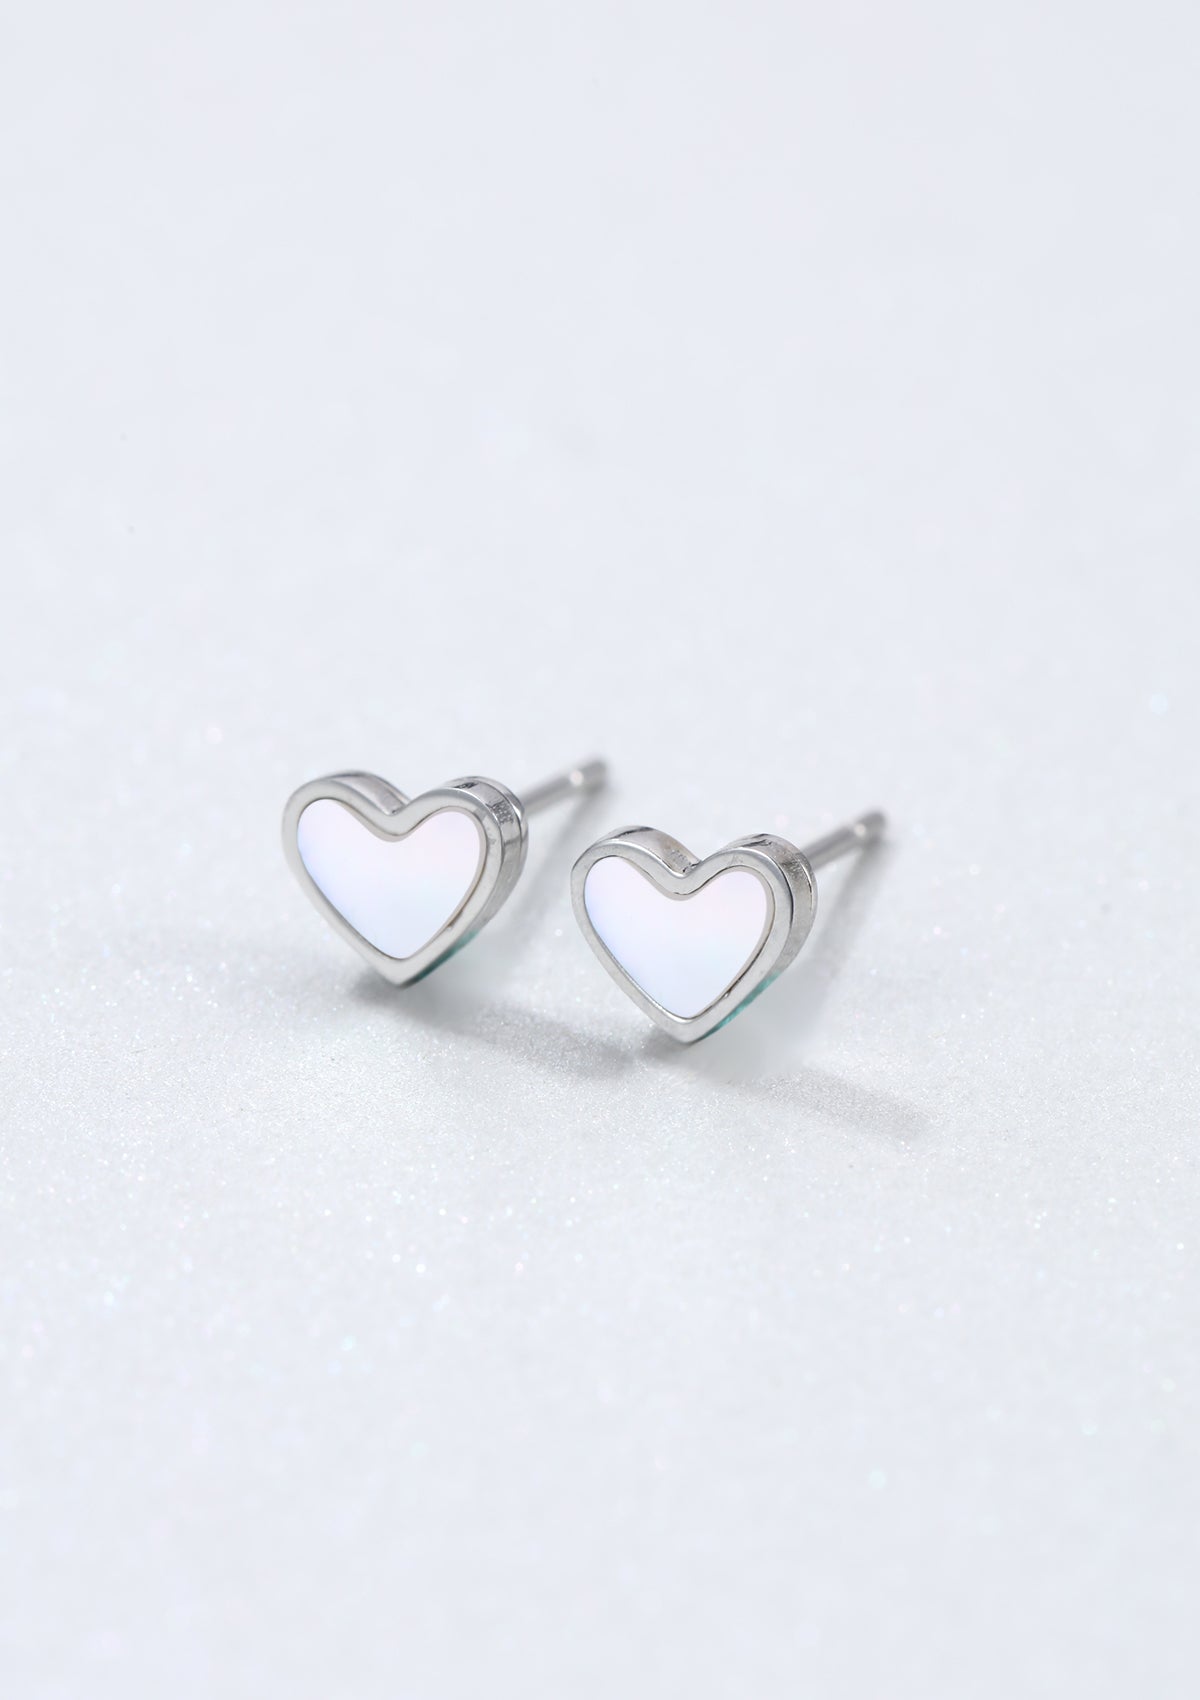 Shell Heart Stud Earrings Silver